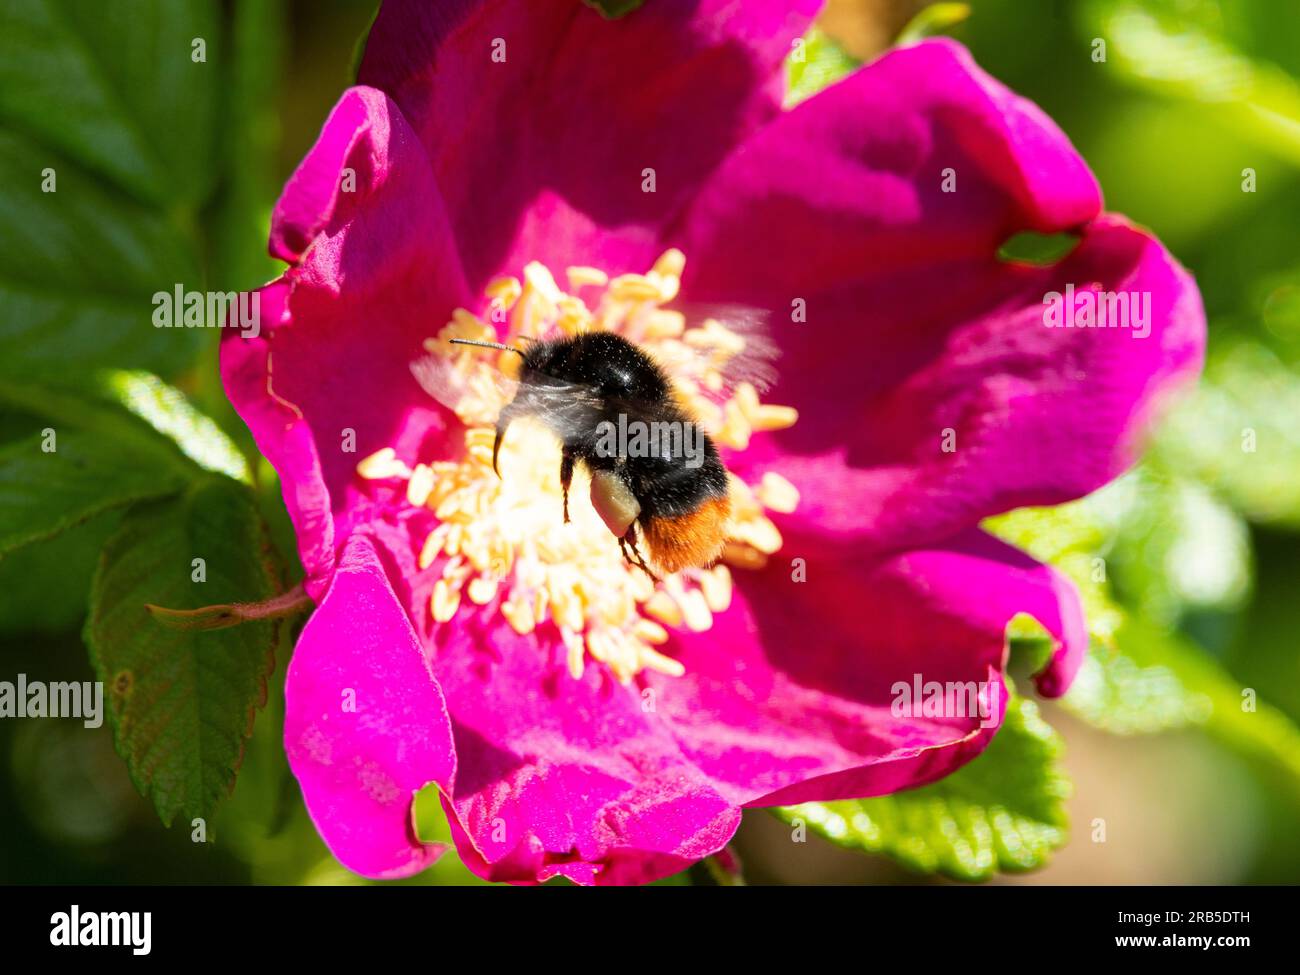 Un Bumble-bee de cola roja vuela en la flor de una rosa japonesa. Son polinizadores importantes y una flor como esta ofrece una rica recompensa en polen Foto de stock